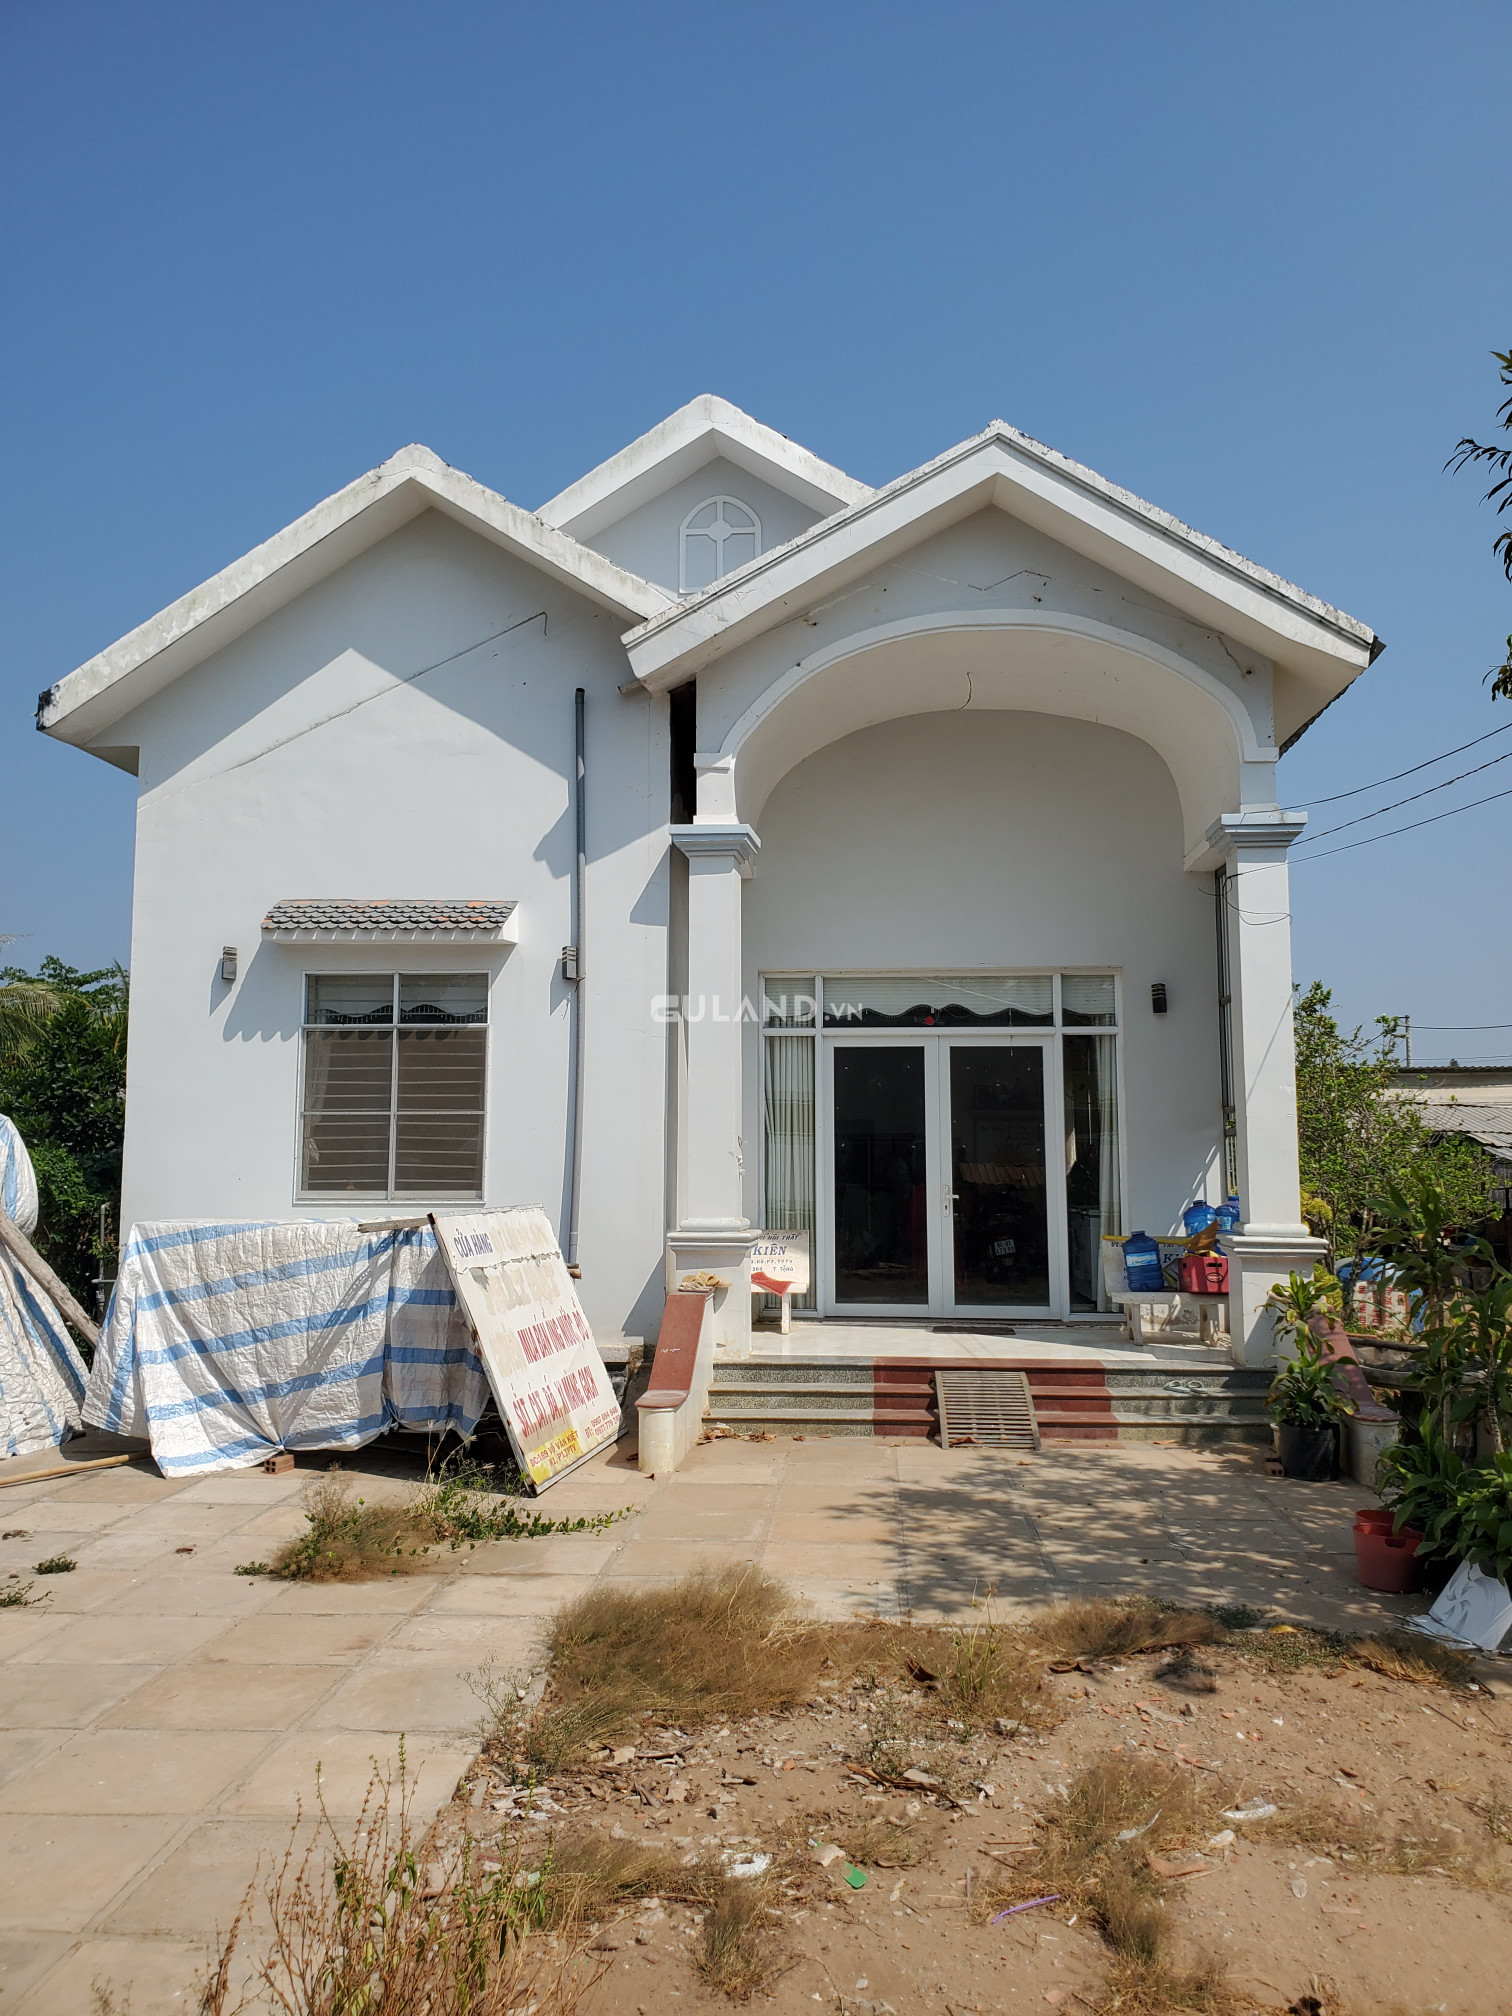 Bán Đất Kèm Nhà Hơn 1000m² hai mặt tiền đường Võ Văn Kiệt, phường 1 Trà Vinh Hàng Hiếm